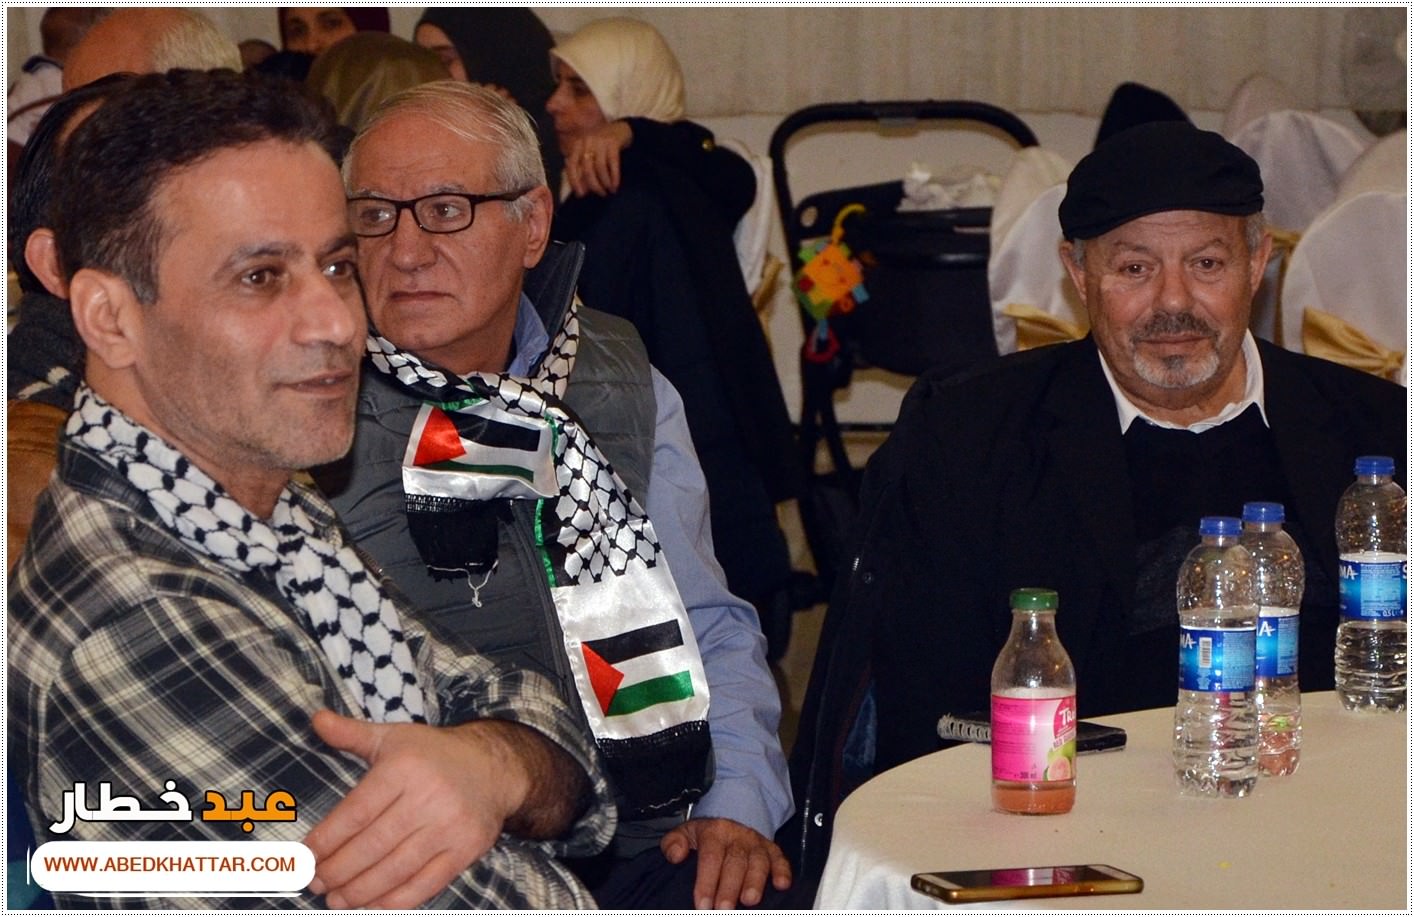 في الذكرى السبعين لتأسيس الأونروا لقد انطلقت فعاليات مؤتمر فلسطينيو أوروبا والأونروا الماضي والحاضر والمستقبل